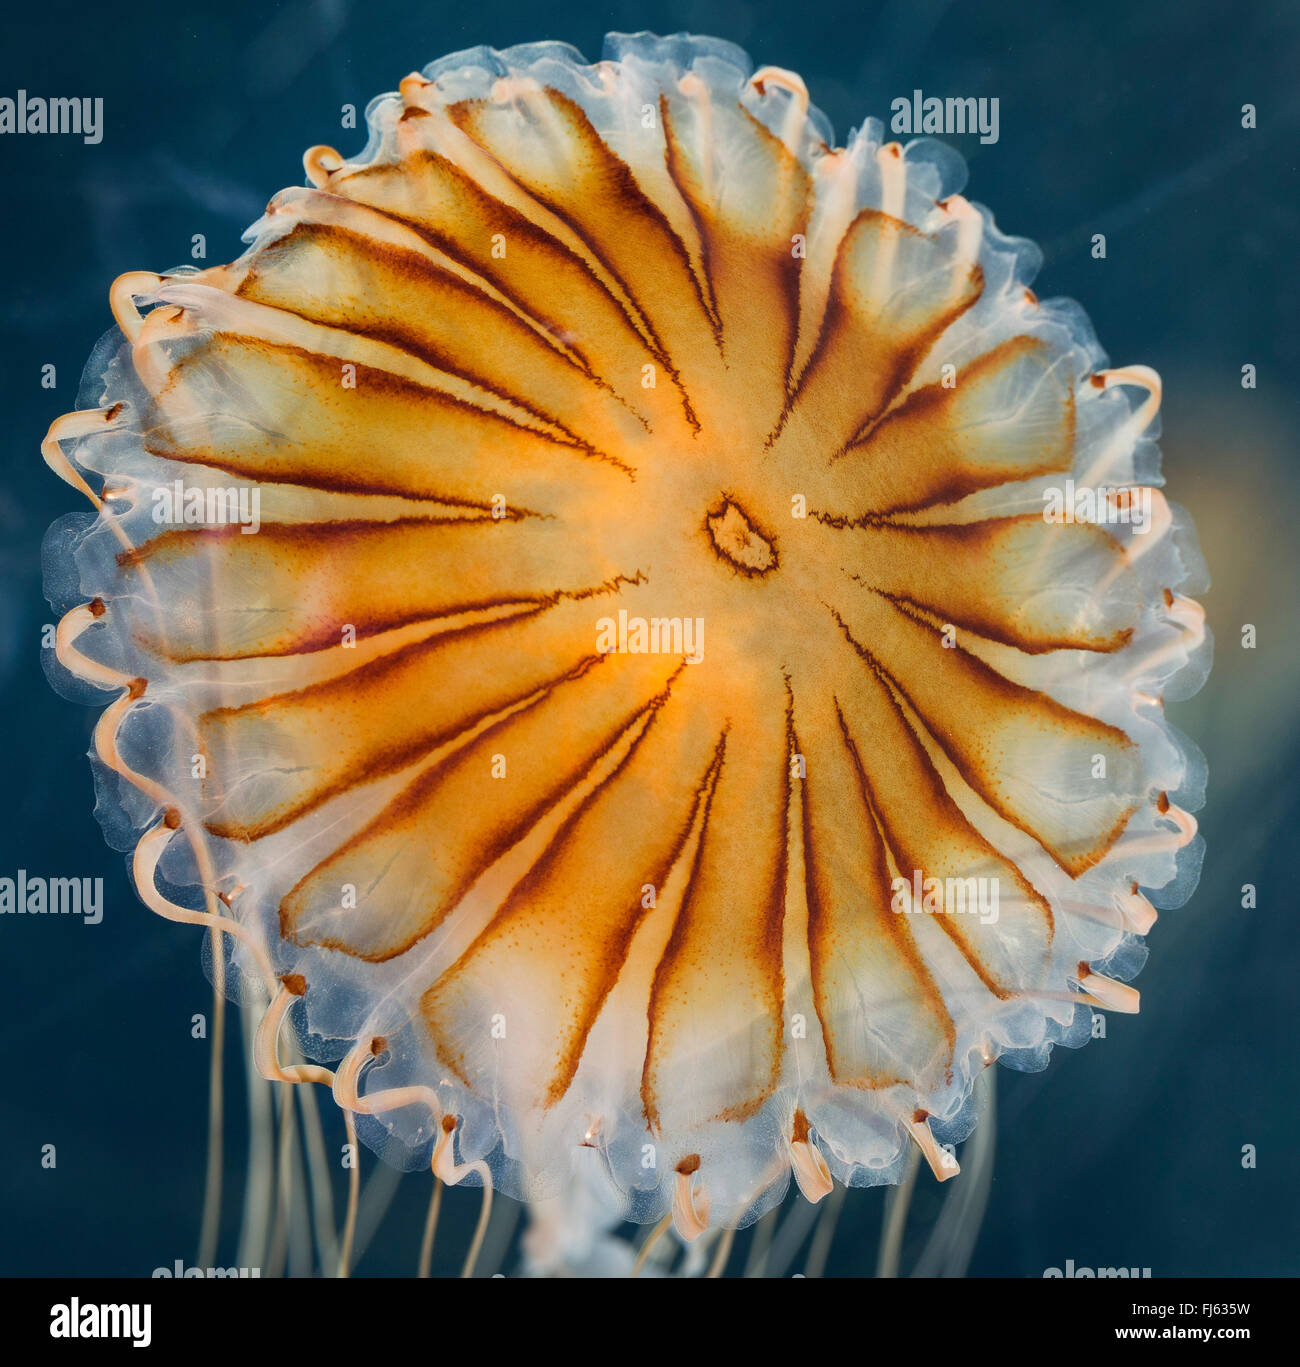 Brújula, medusas Medusas con bandas rojas (Chrysaora hysoscella), flotando en el agua Foto de stock